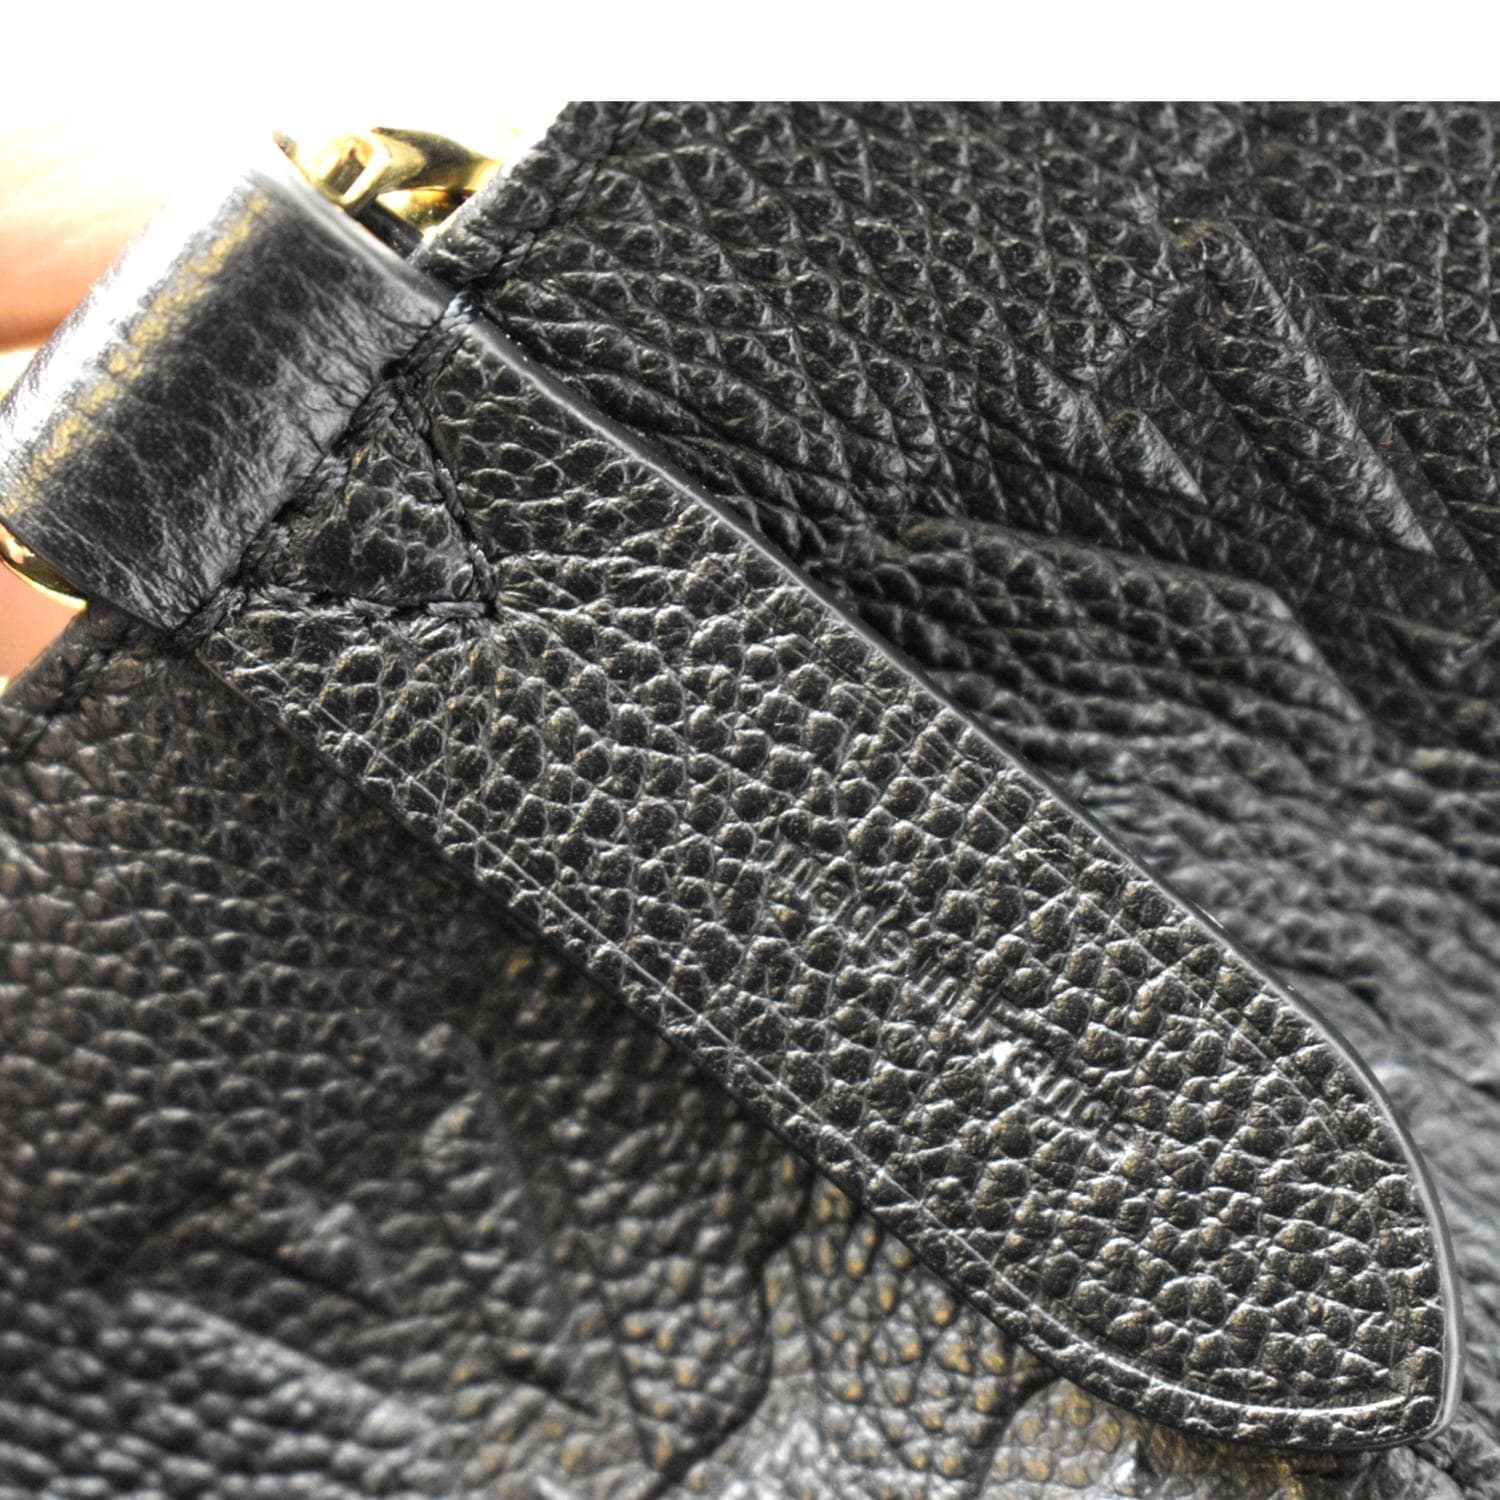 LOUIS VUITTON M45497 NeoNoe MM Monogram Empreinte Leather Shoulder Bag Black